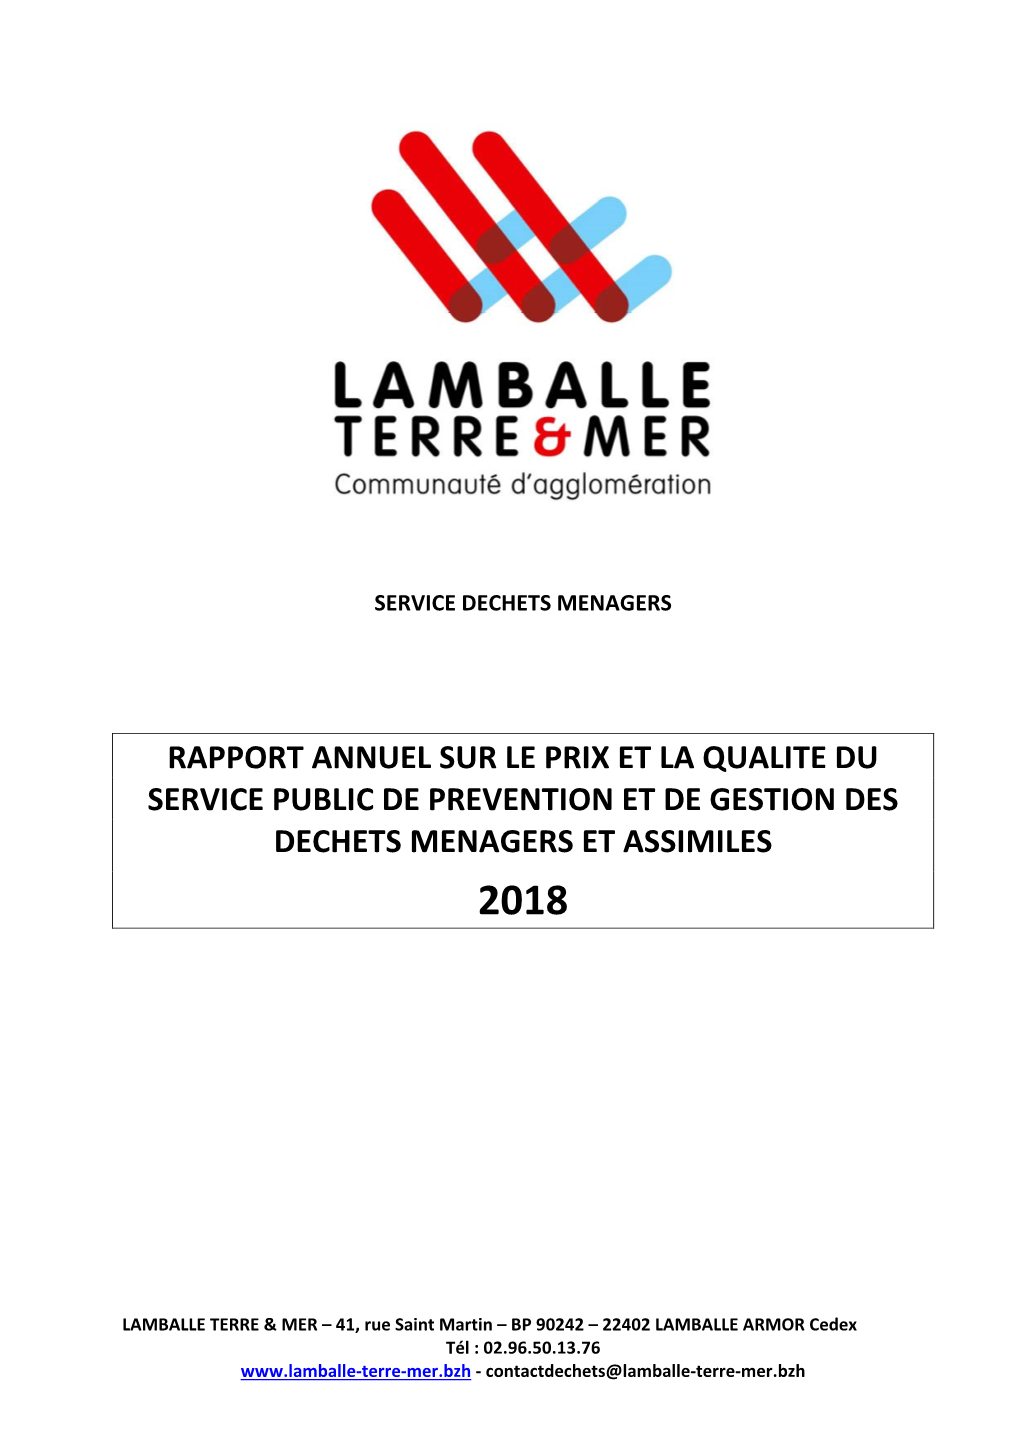 Rapport Annuel Sur Le Prix Et La Qualite Du Service Public De Prevention Et De Gestion Des Dechets Menagers Et Assimiles